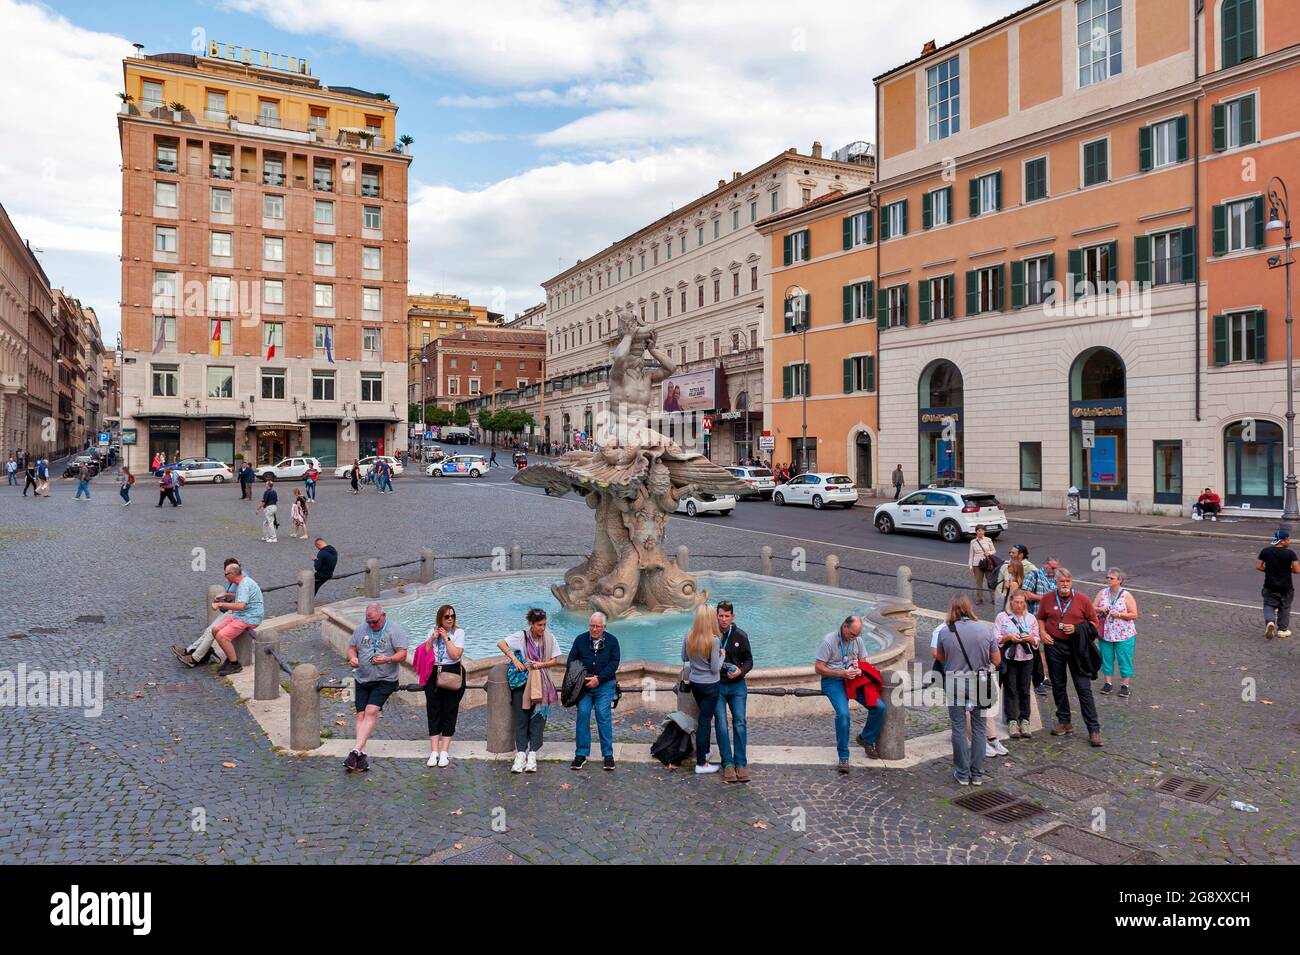 Rome, Italy - October 2019: Fontana del Tritone (Triton Fountain) located at Piazza Barberini in Rome, Italy Stock Photo